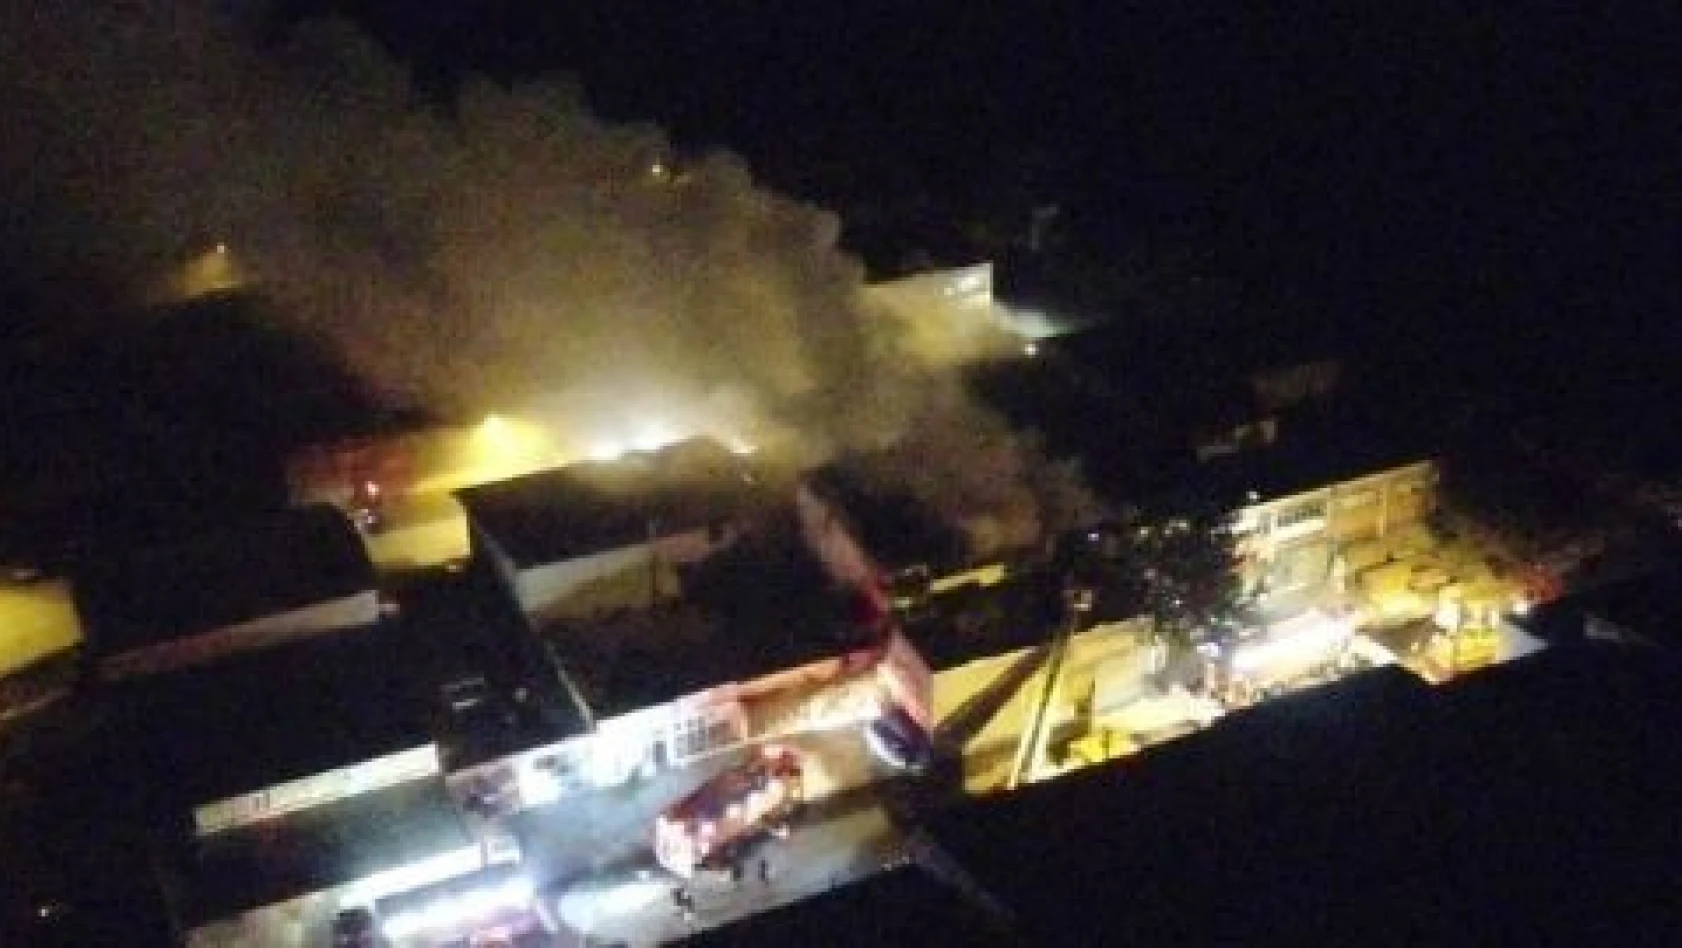 Kayseri OSB'de mobilya fabrikasında yangın